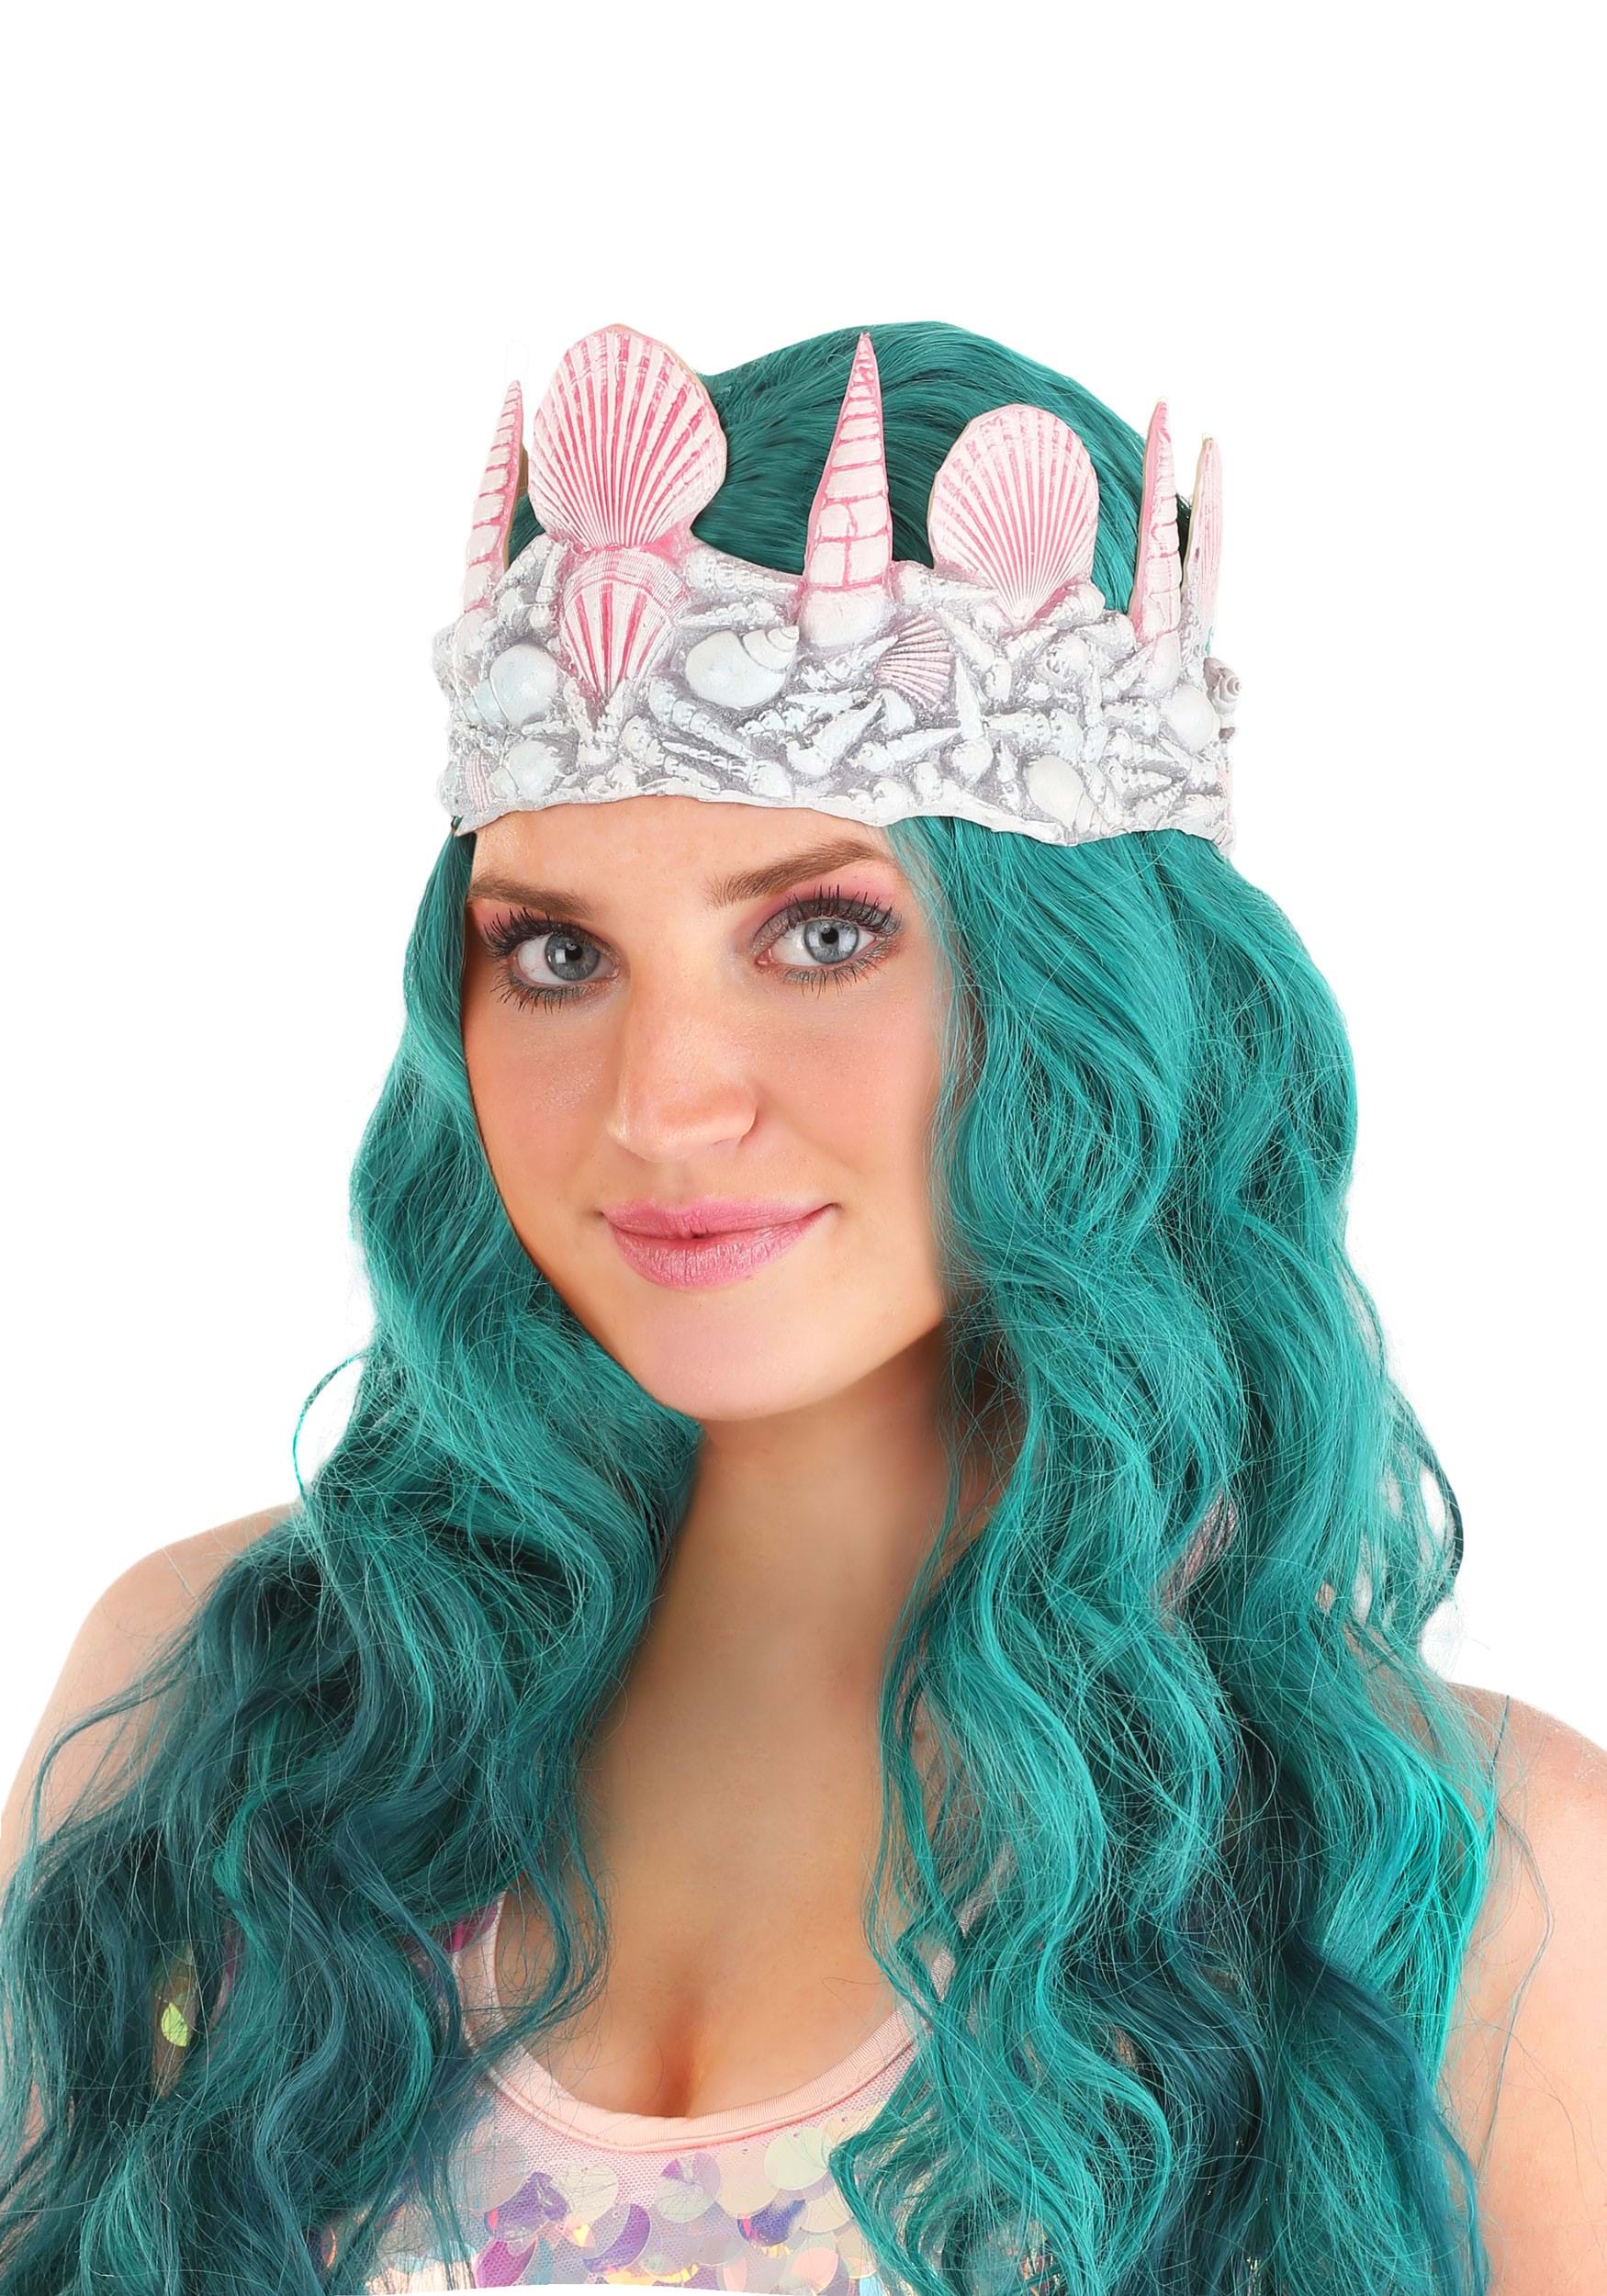 Steal My Mermaid Makeup Look (Plus Seashell Crown Tutorial!)